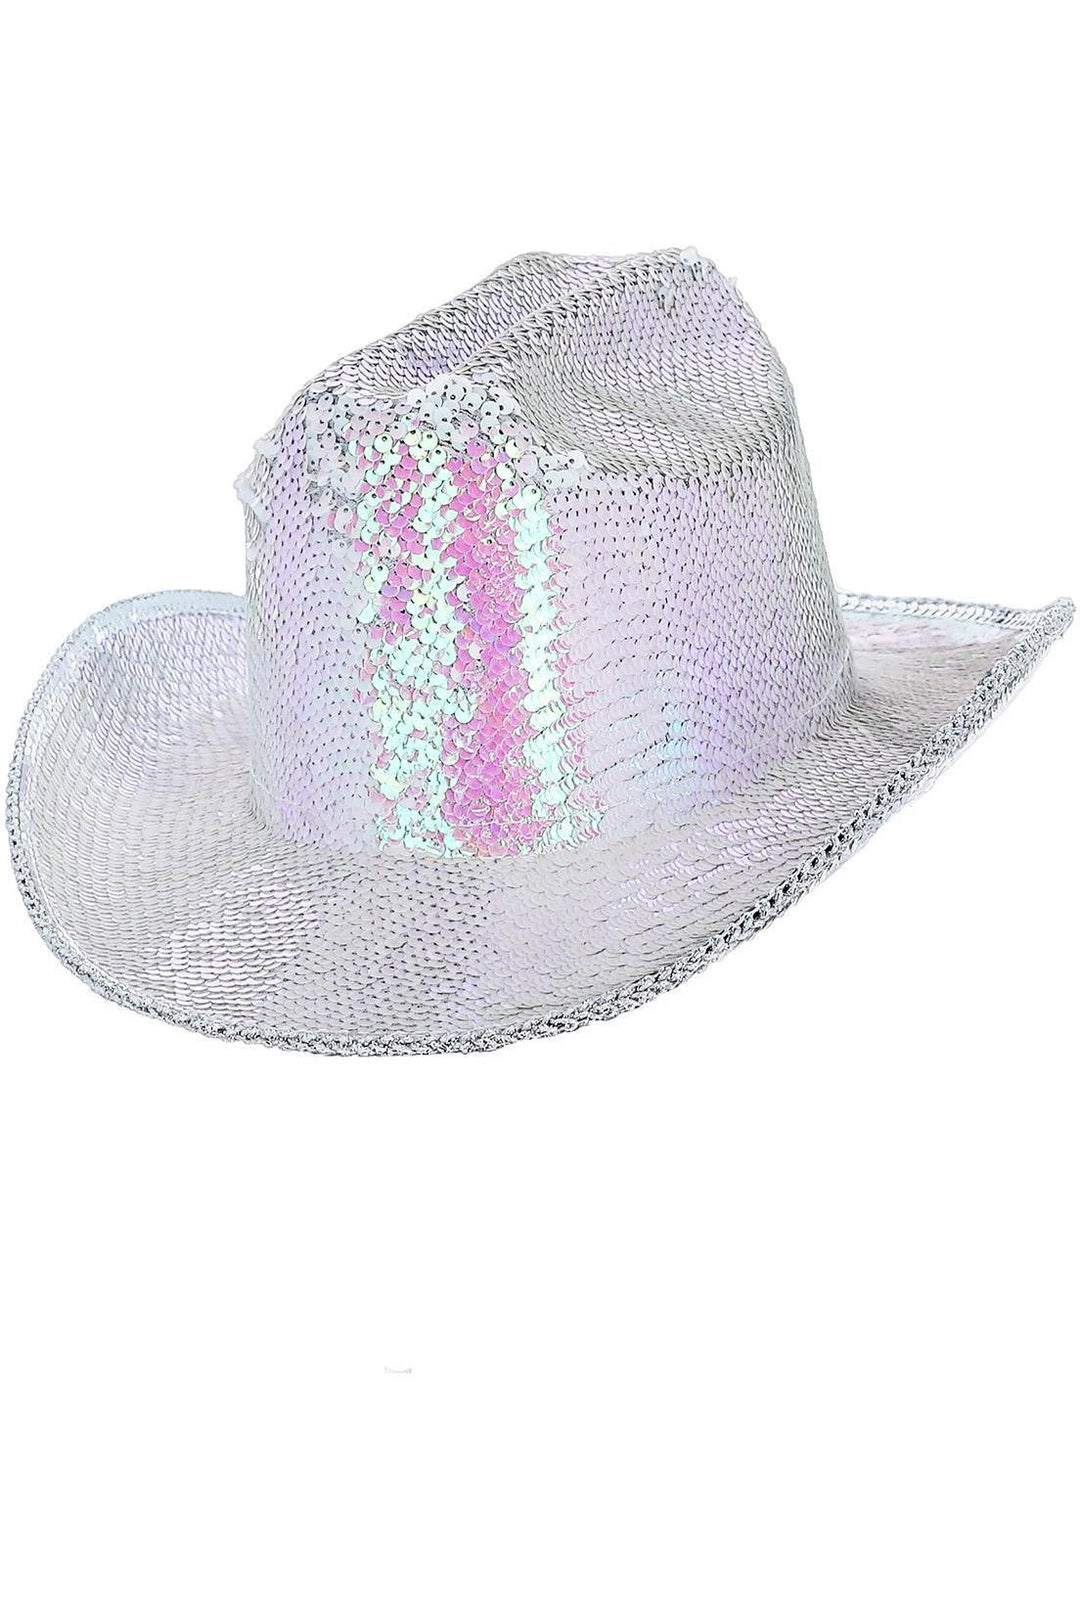 Fever Deluxe Sequin Cowboy Hat